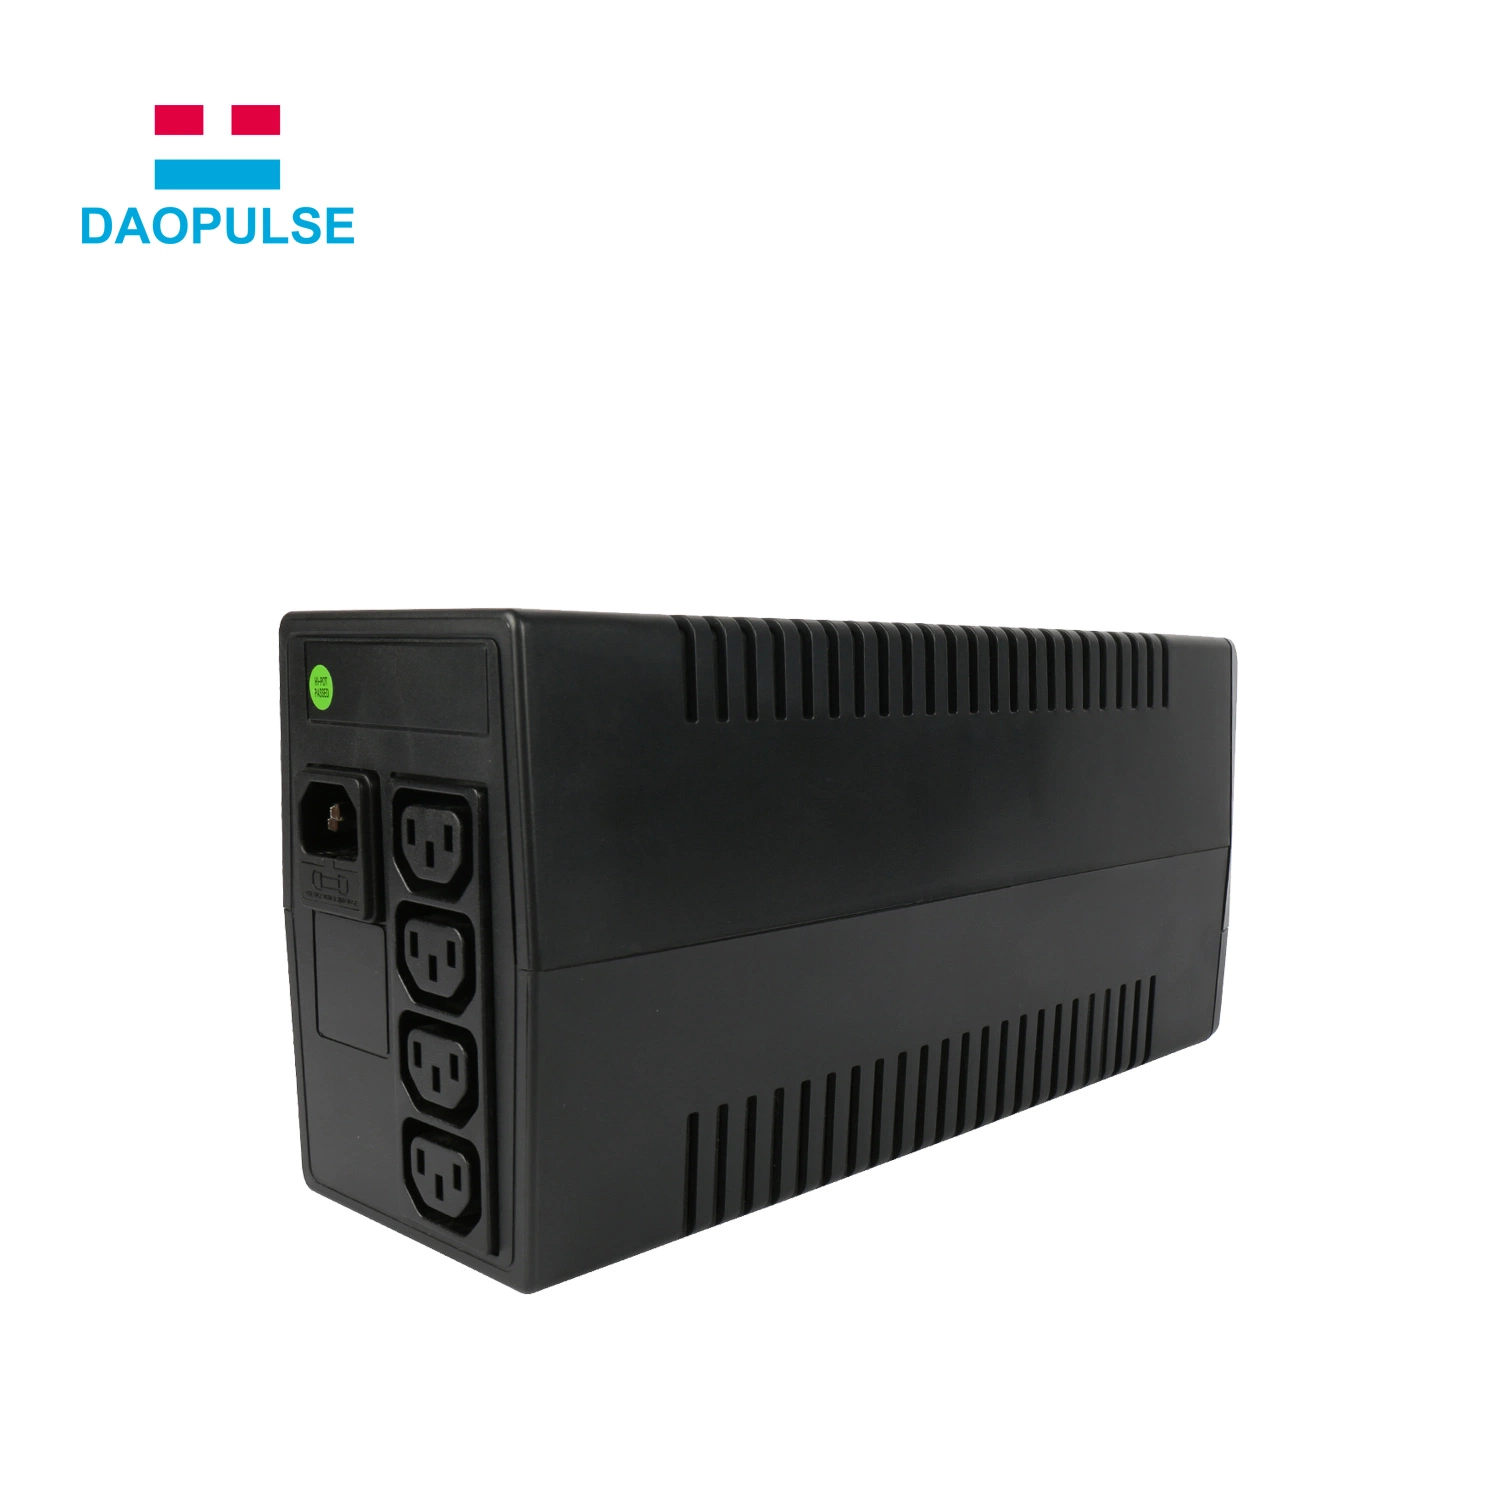 Início Automático Inteligente automática da onda senoidal 600va 800VA UPS de Backup Offline para sistema eletrônico